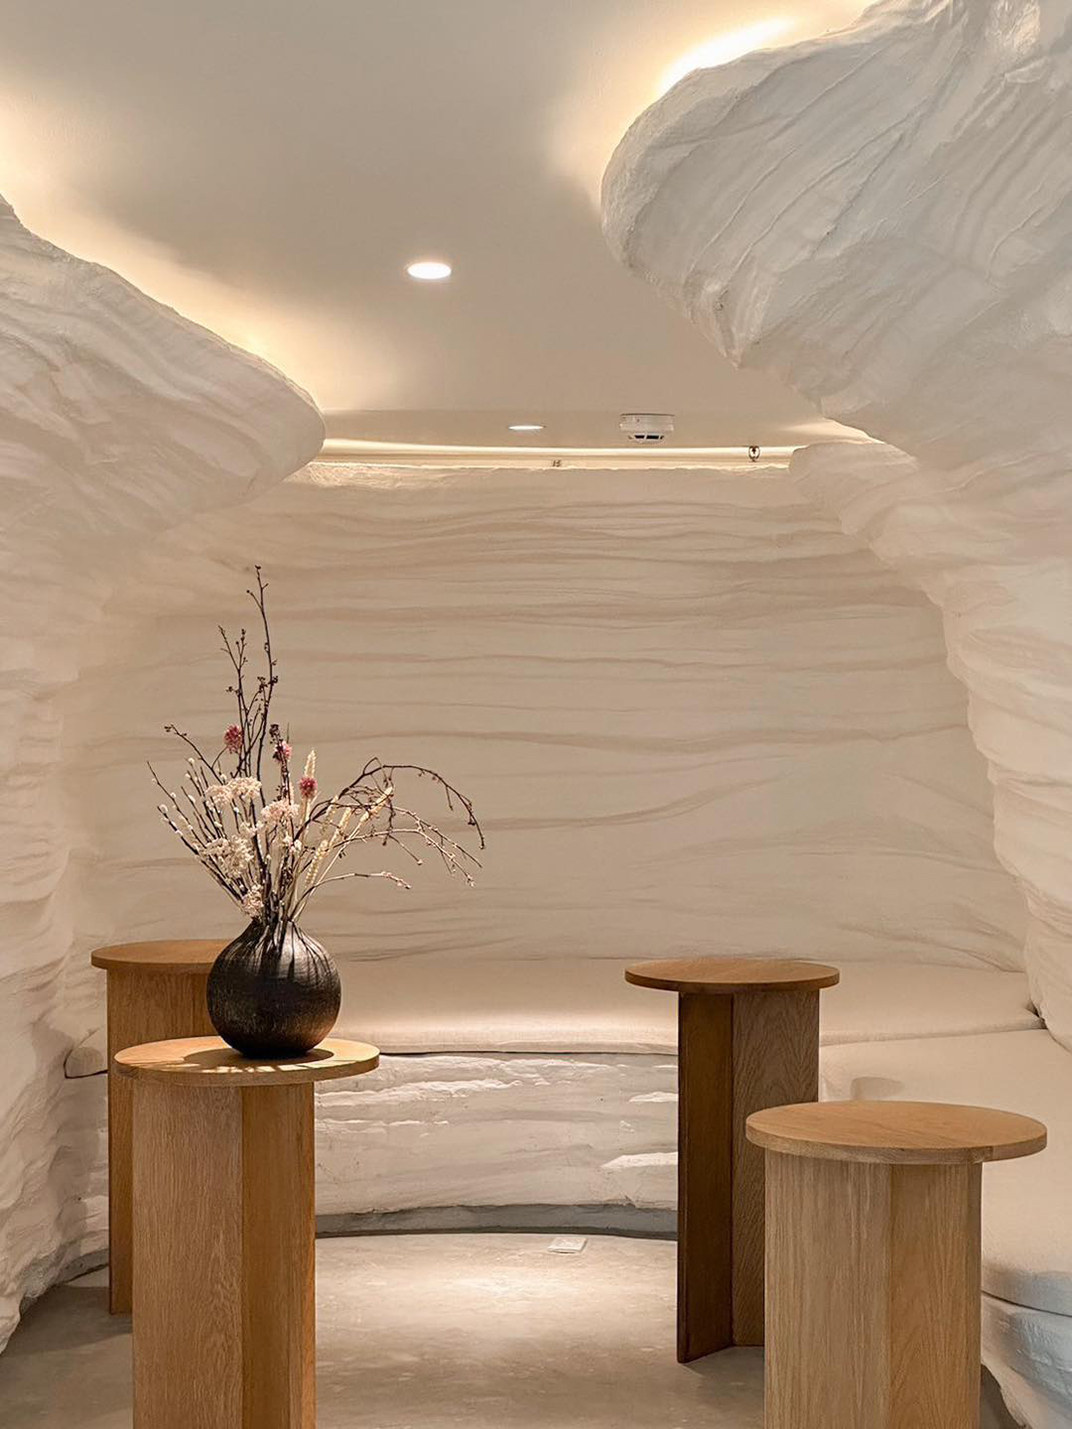 白色洞穴咖啡店概念店 泰国 曼谷 北京 上海 珠海 广州 武汉 杭州 佛山 香港 澳门 logo设计 vi设计 空间设计